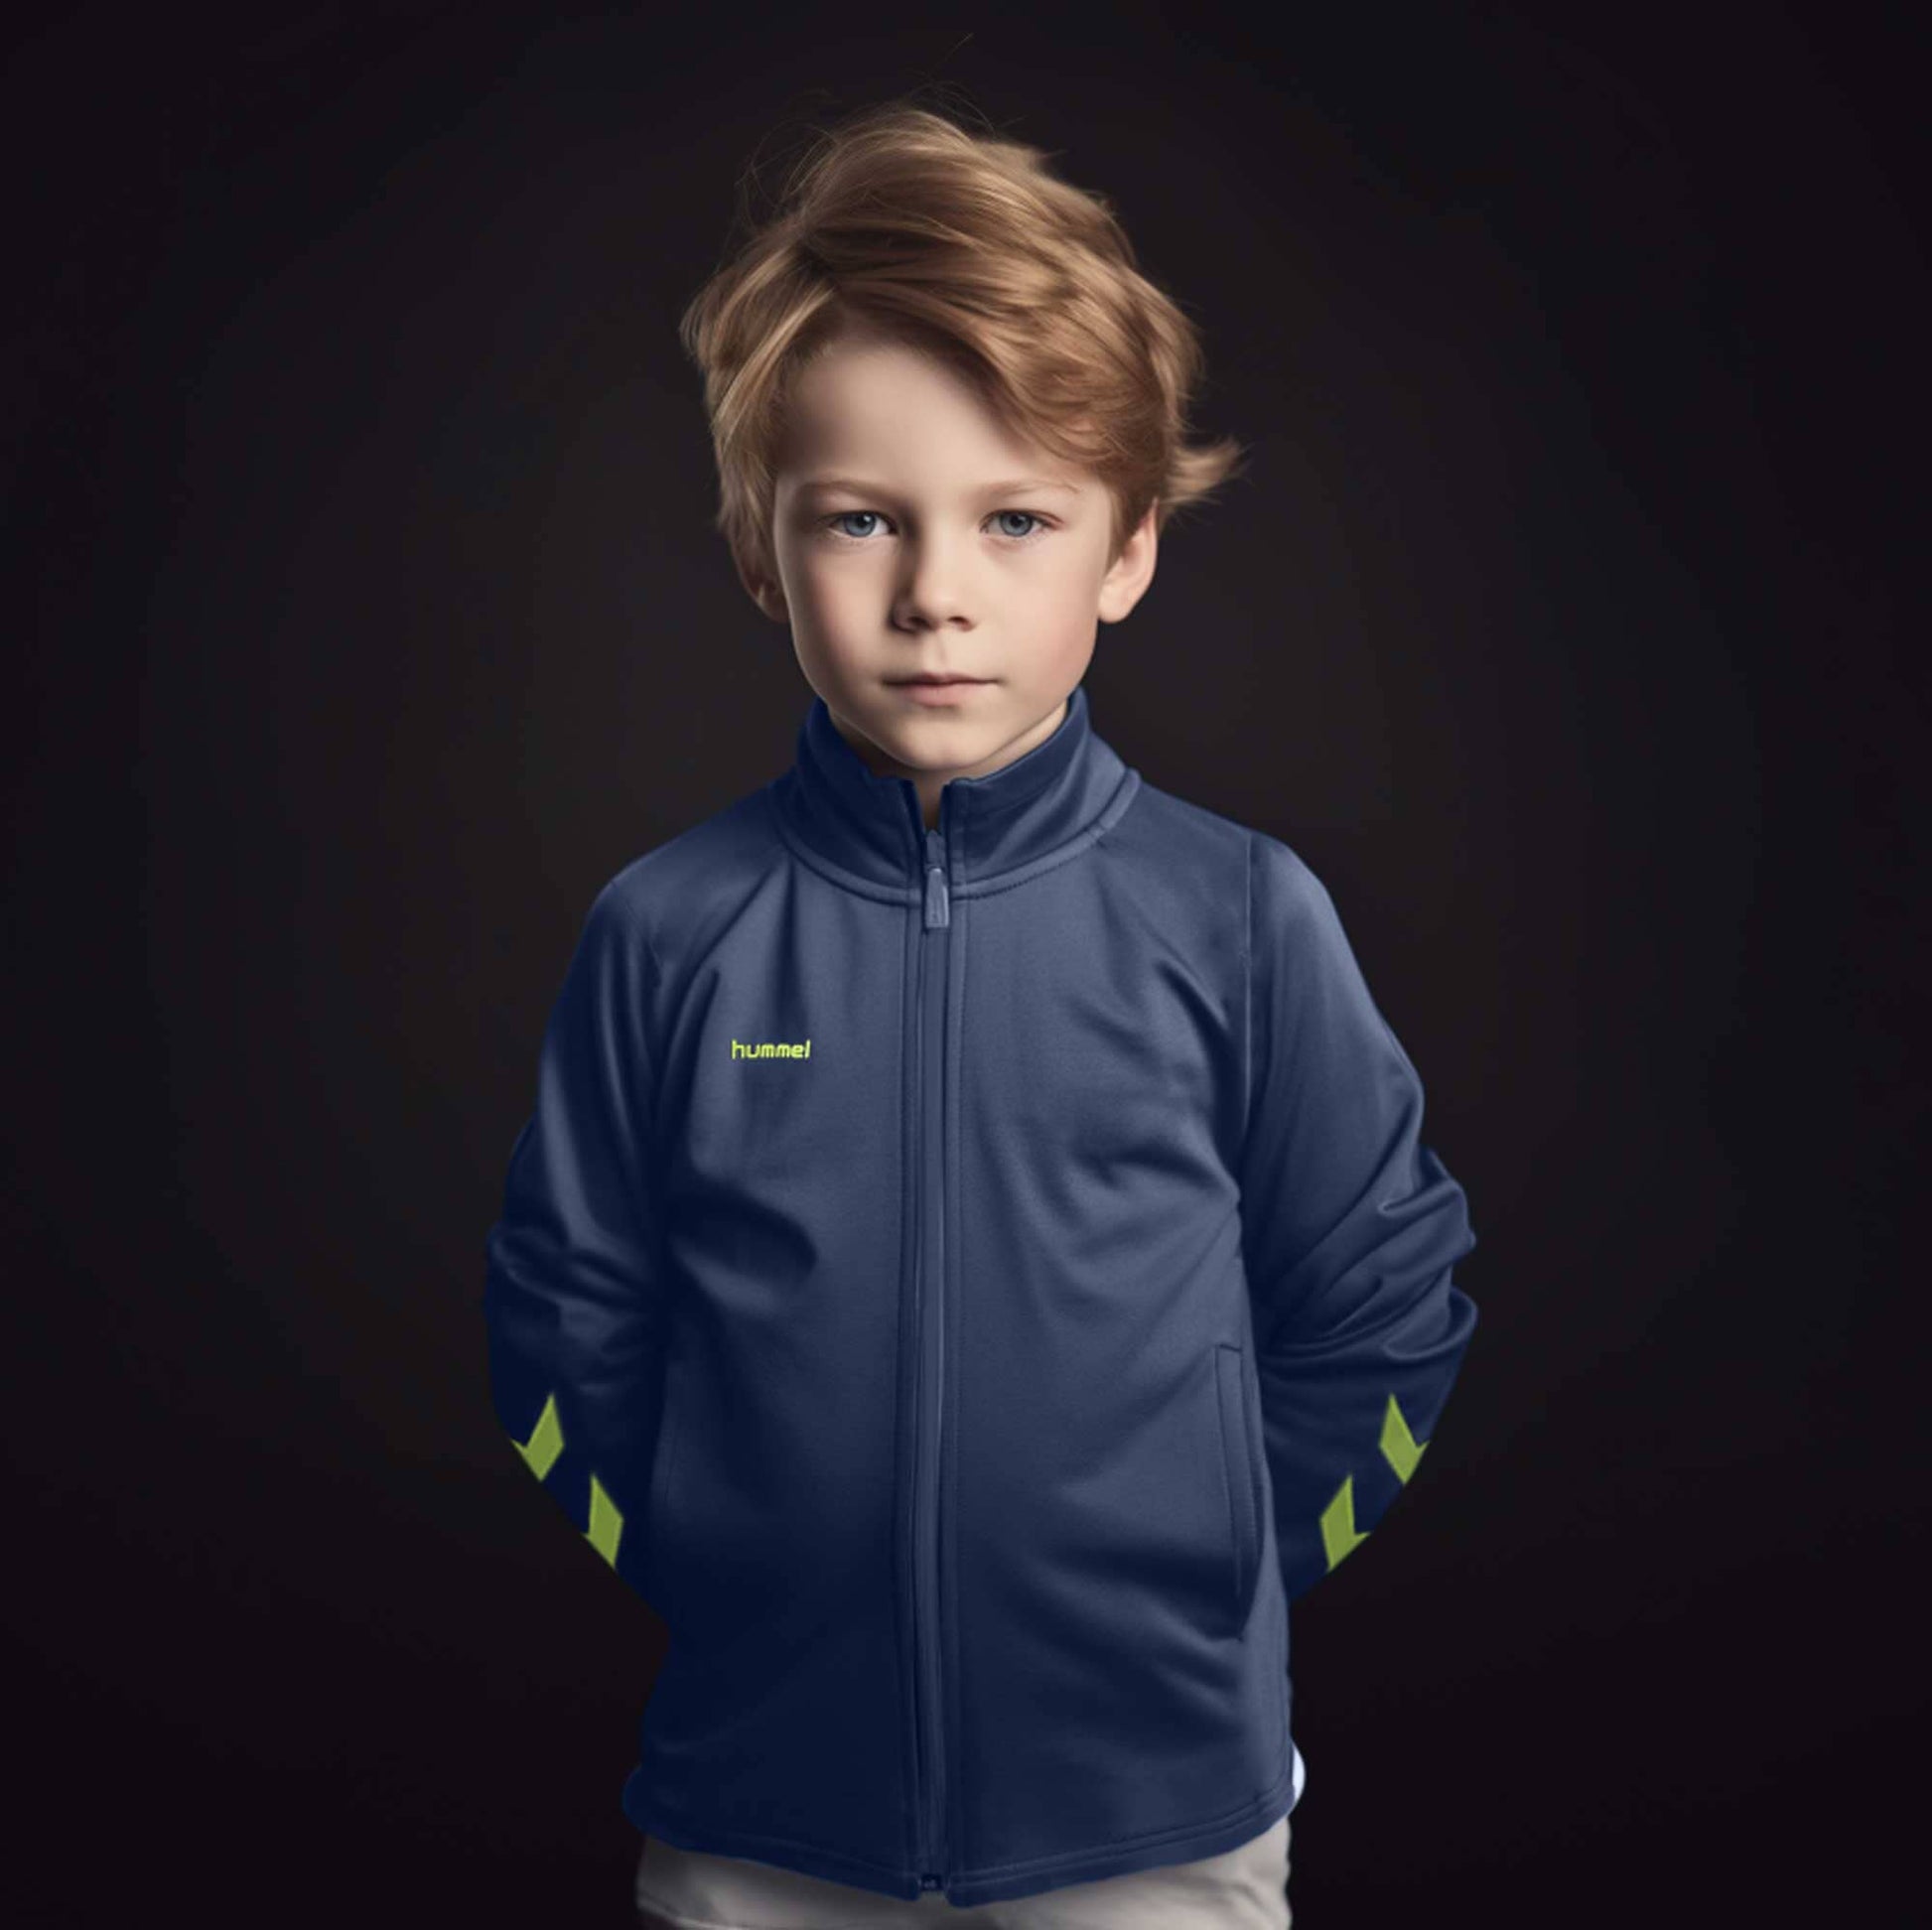 Hummel Boy\'s Arrow Printed Sports Zipper Jacket